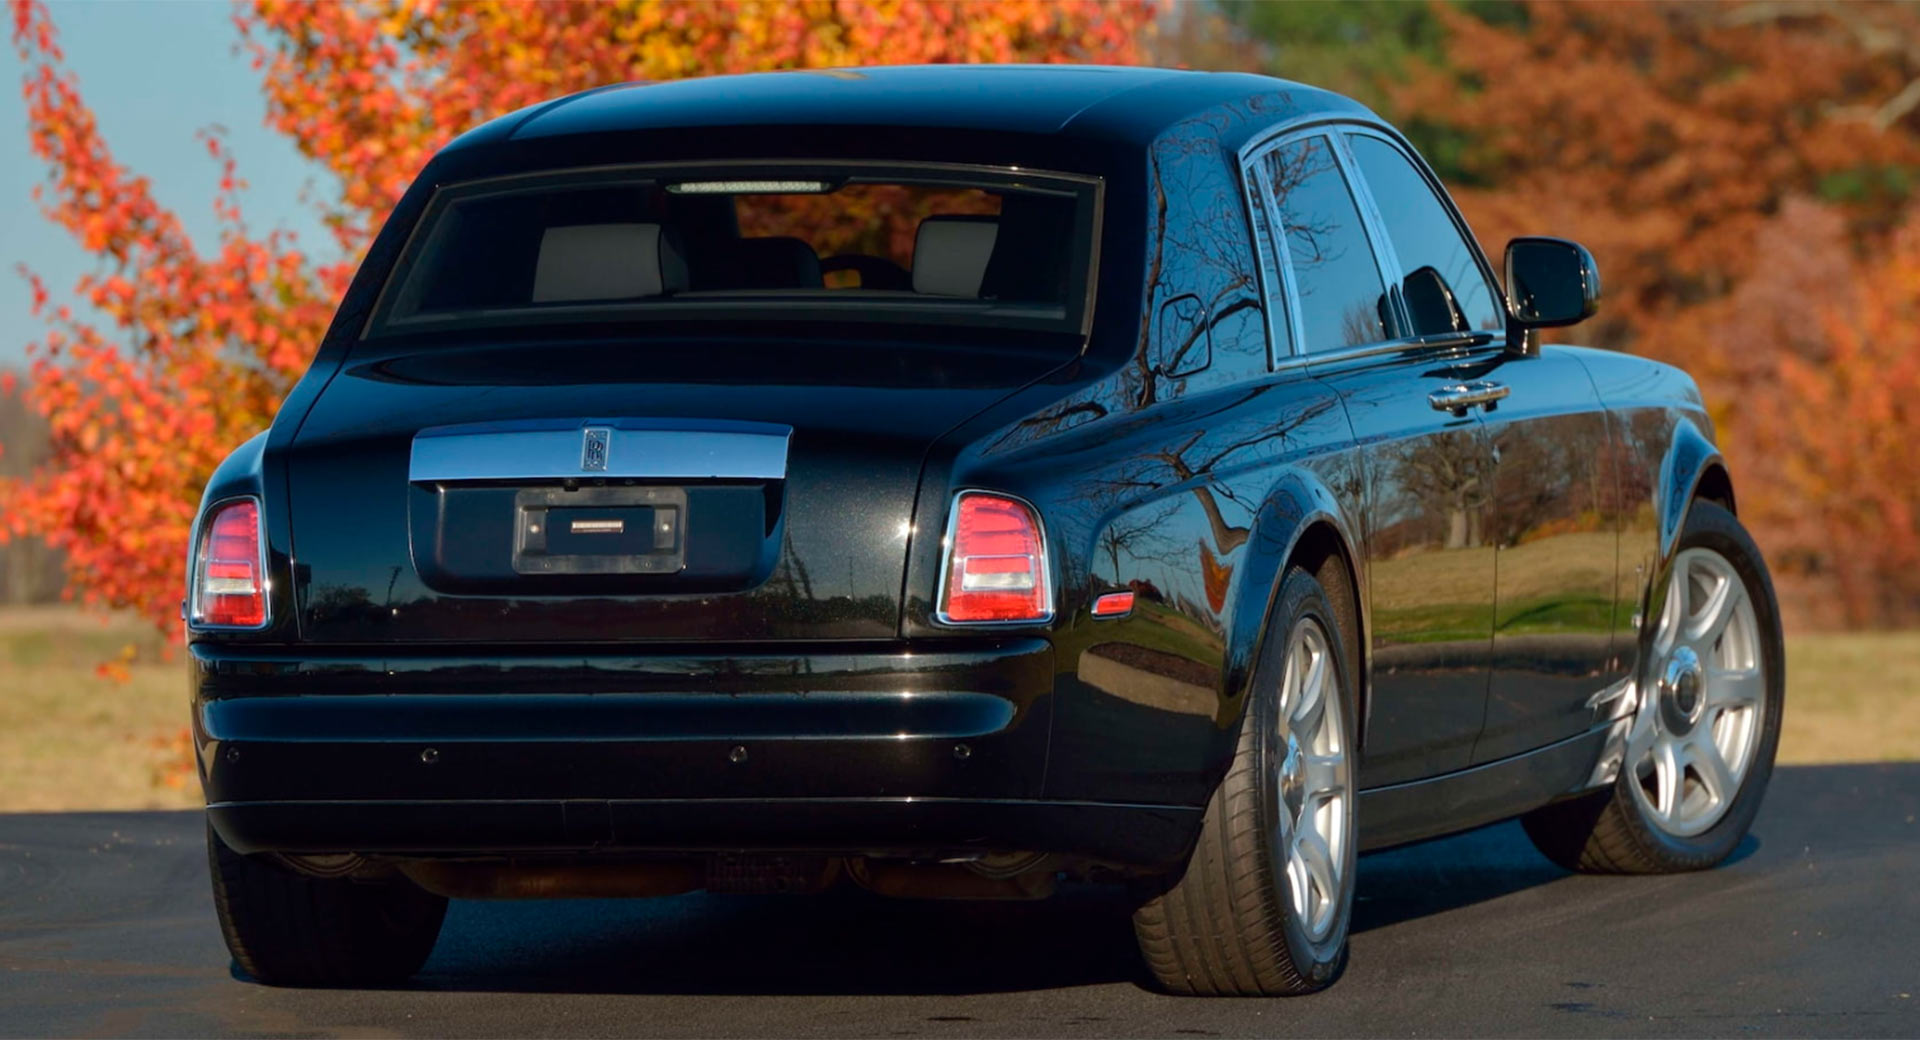 Rolls-Royce Phantom từng của Donald Trump sắp được bán đấu giá rolls-royce-phantom-3.jpg